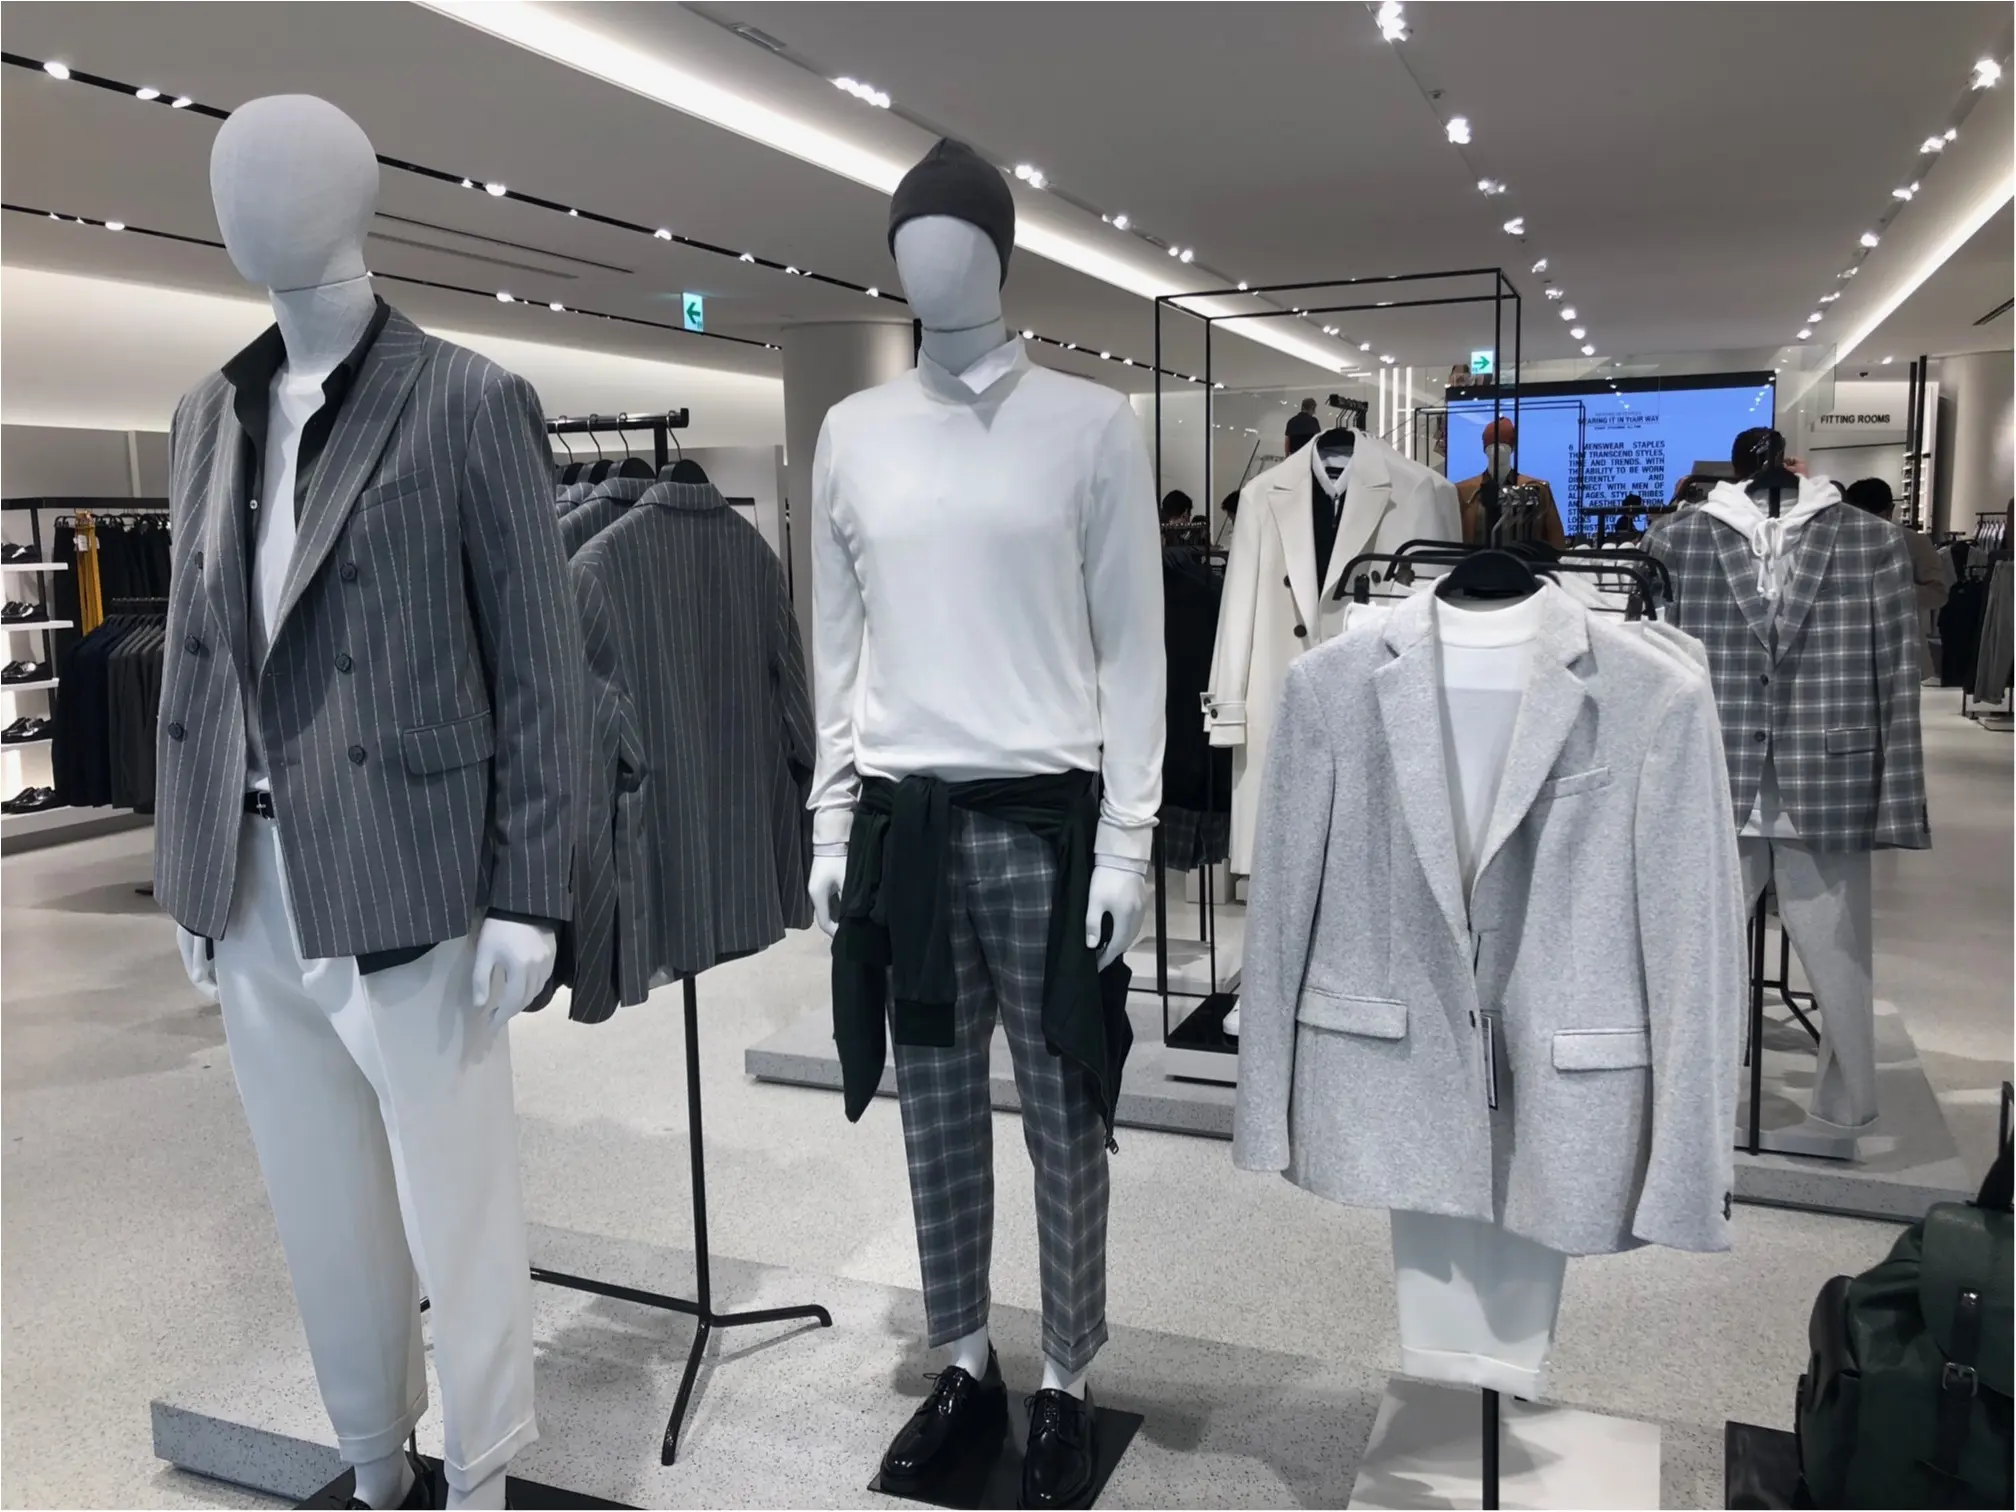 速報 Zara 六本木店 リニューアルオープン ジャケット と チェック が大豊作 ファッション コーディネート 代 Daily More